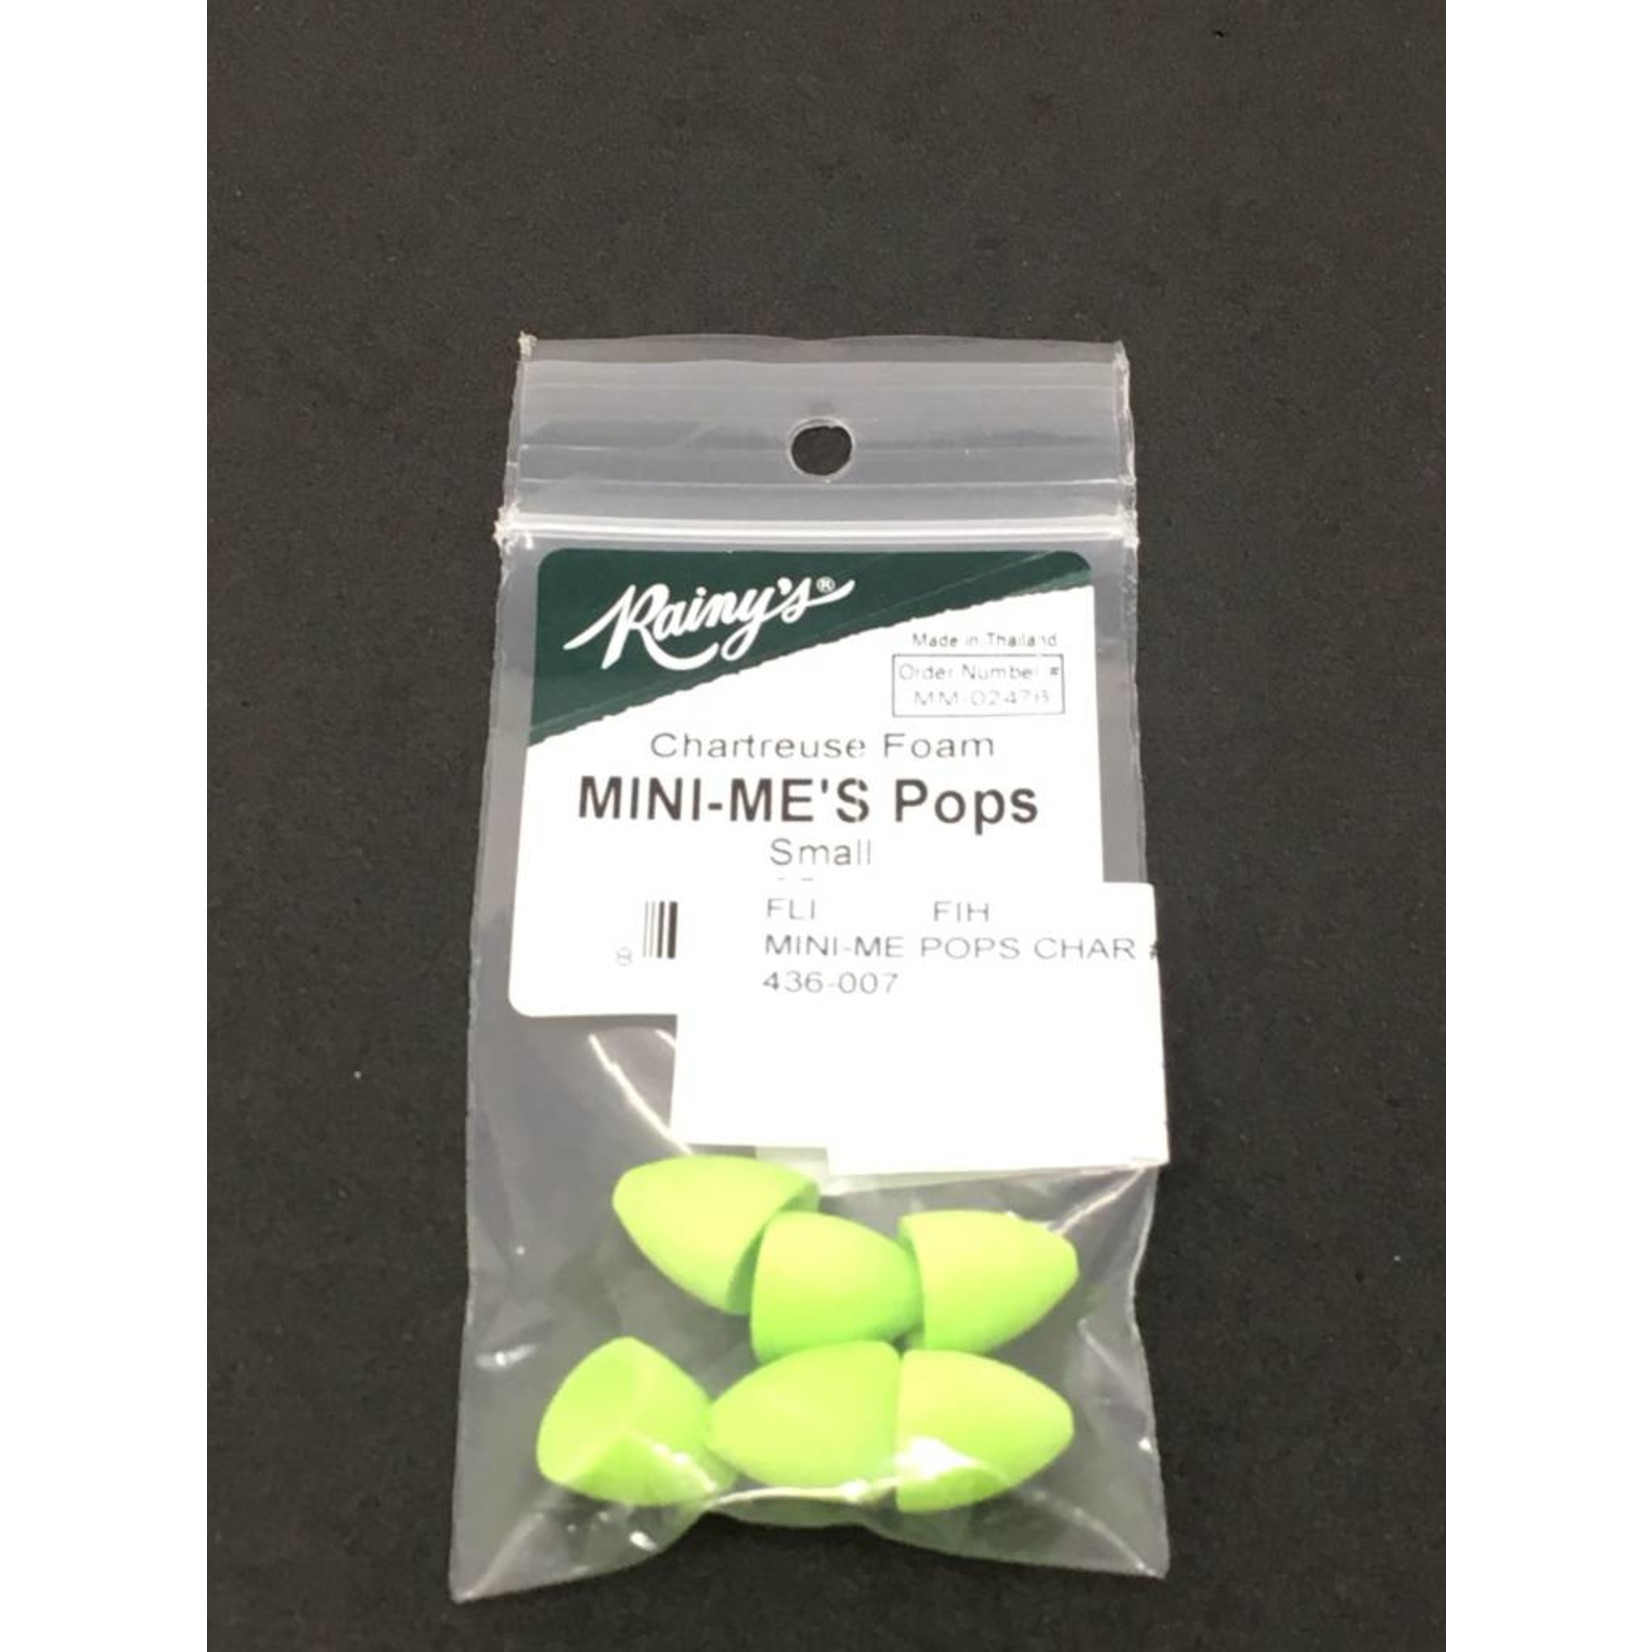 Rainy's Mini-Me's Pops Chartreuse #1 Hook